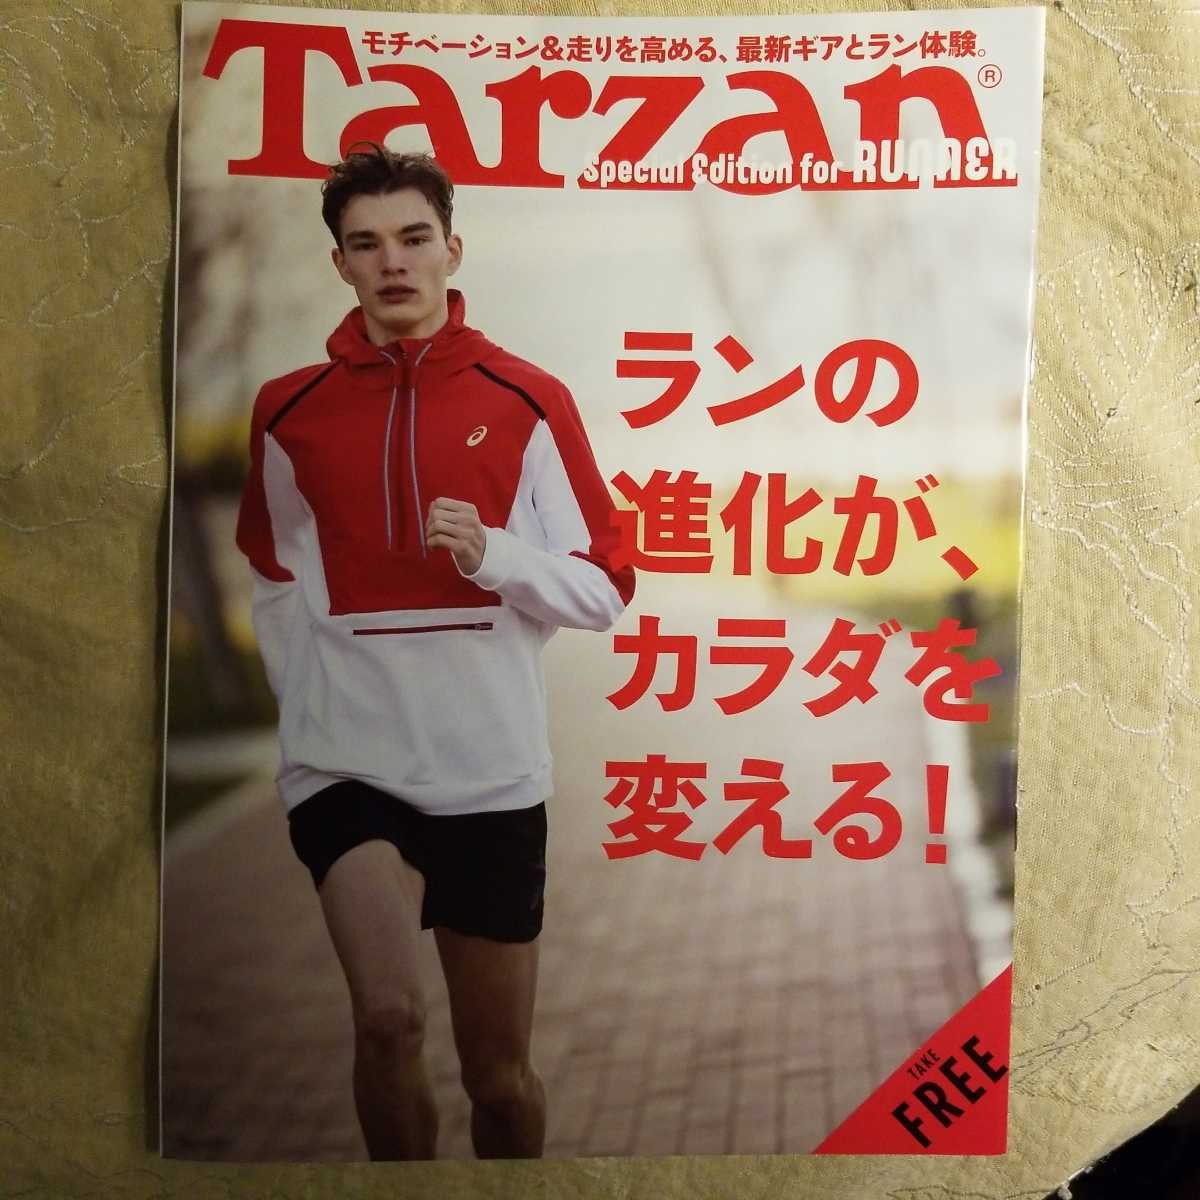 * новый товар быстрое решение *Tarzan Tarzan Special Edition for Runner Ran. эволюция .,kalada. поменять!* стоимость доставки 185 иен 